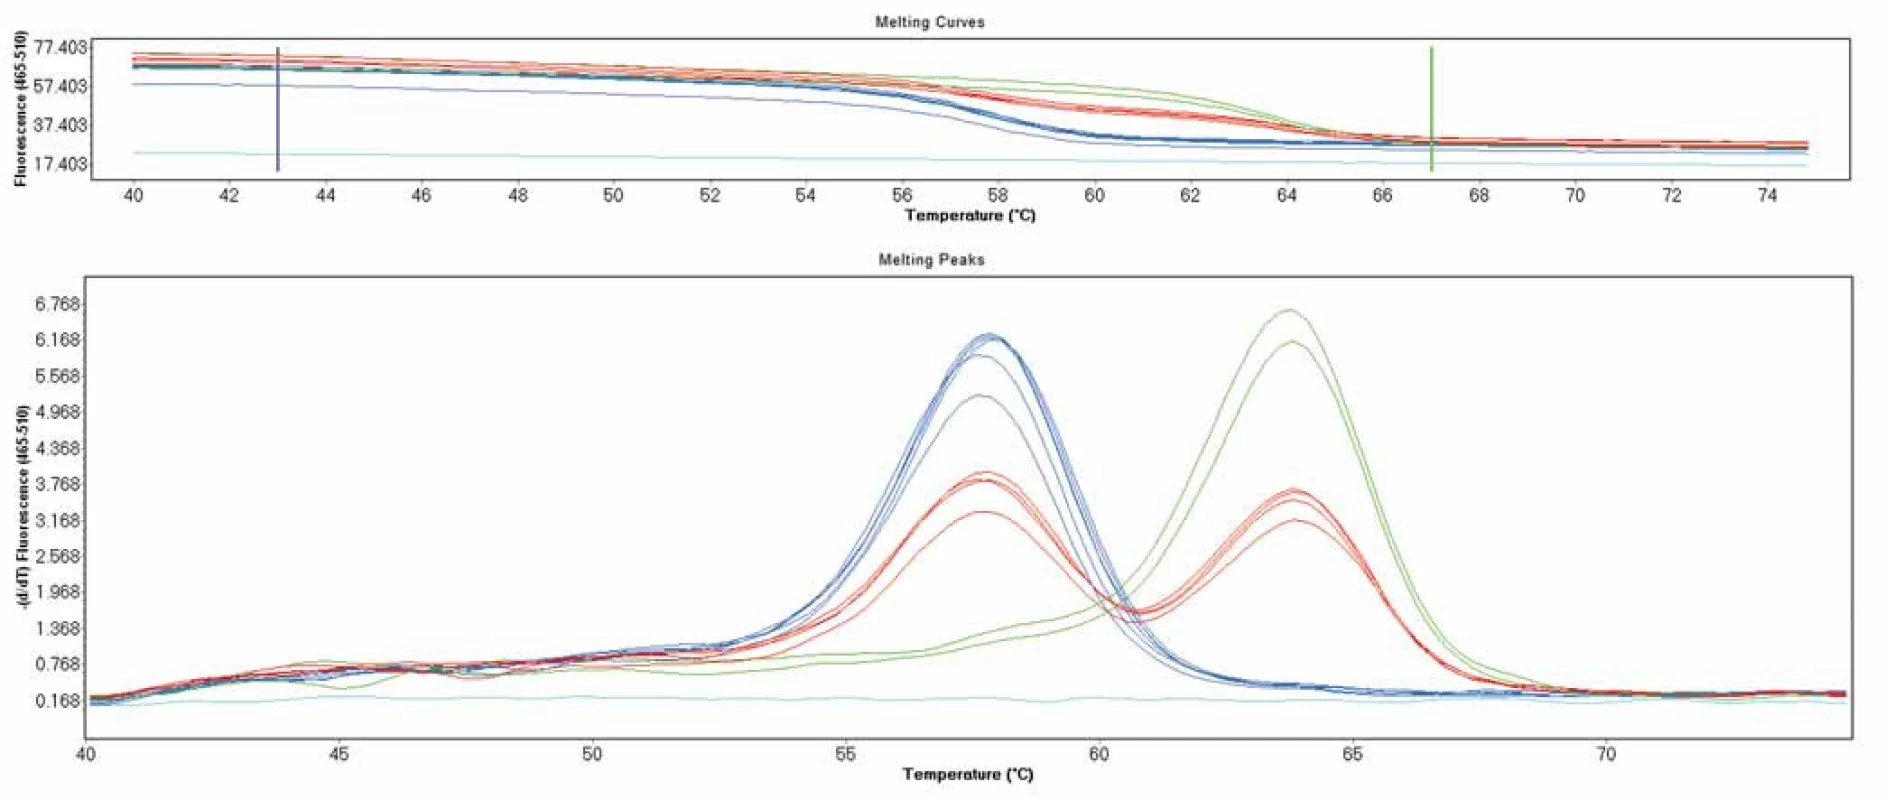 Genotypizace pomocí křivek tání na přístroji LightCycler 480 II - polymorfizmus p.Val66Met v genu &lt;i&gt;BDNF&lt;/i&gt;. Pík při 59 °C značí standardní alelu, pík při teplotě 64 °C značí mutantní alelu.
Fig. 1. LightCycler 480 II melting curves genotyping analysis – p.Val66Met polymorphism in &lt;i&gt;BDNF&lt;/i&gt; gene. Peak at melting temperature 59 °C indicates wild type allele, peak at 64 °C indicates mutant allele.